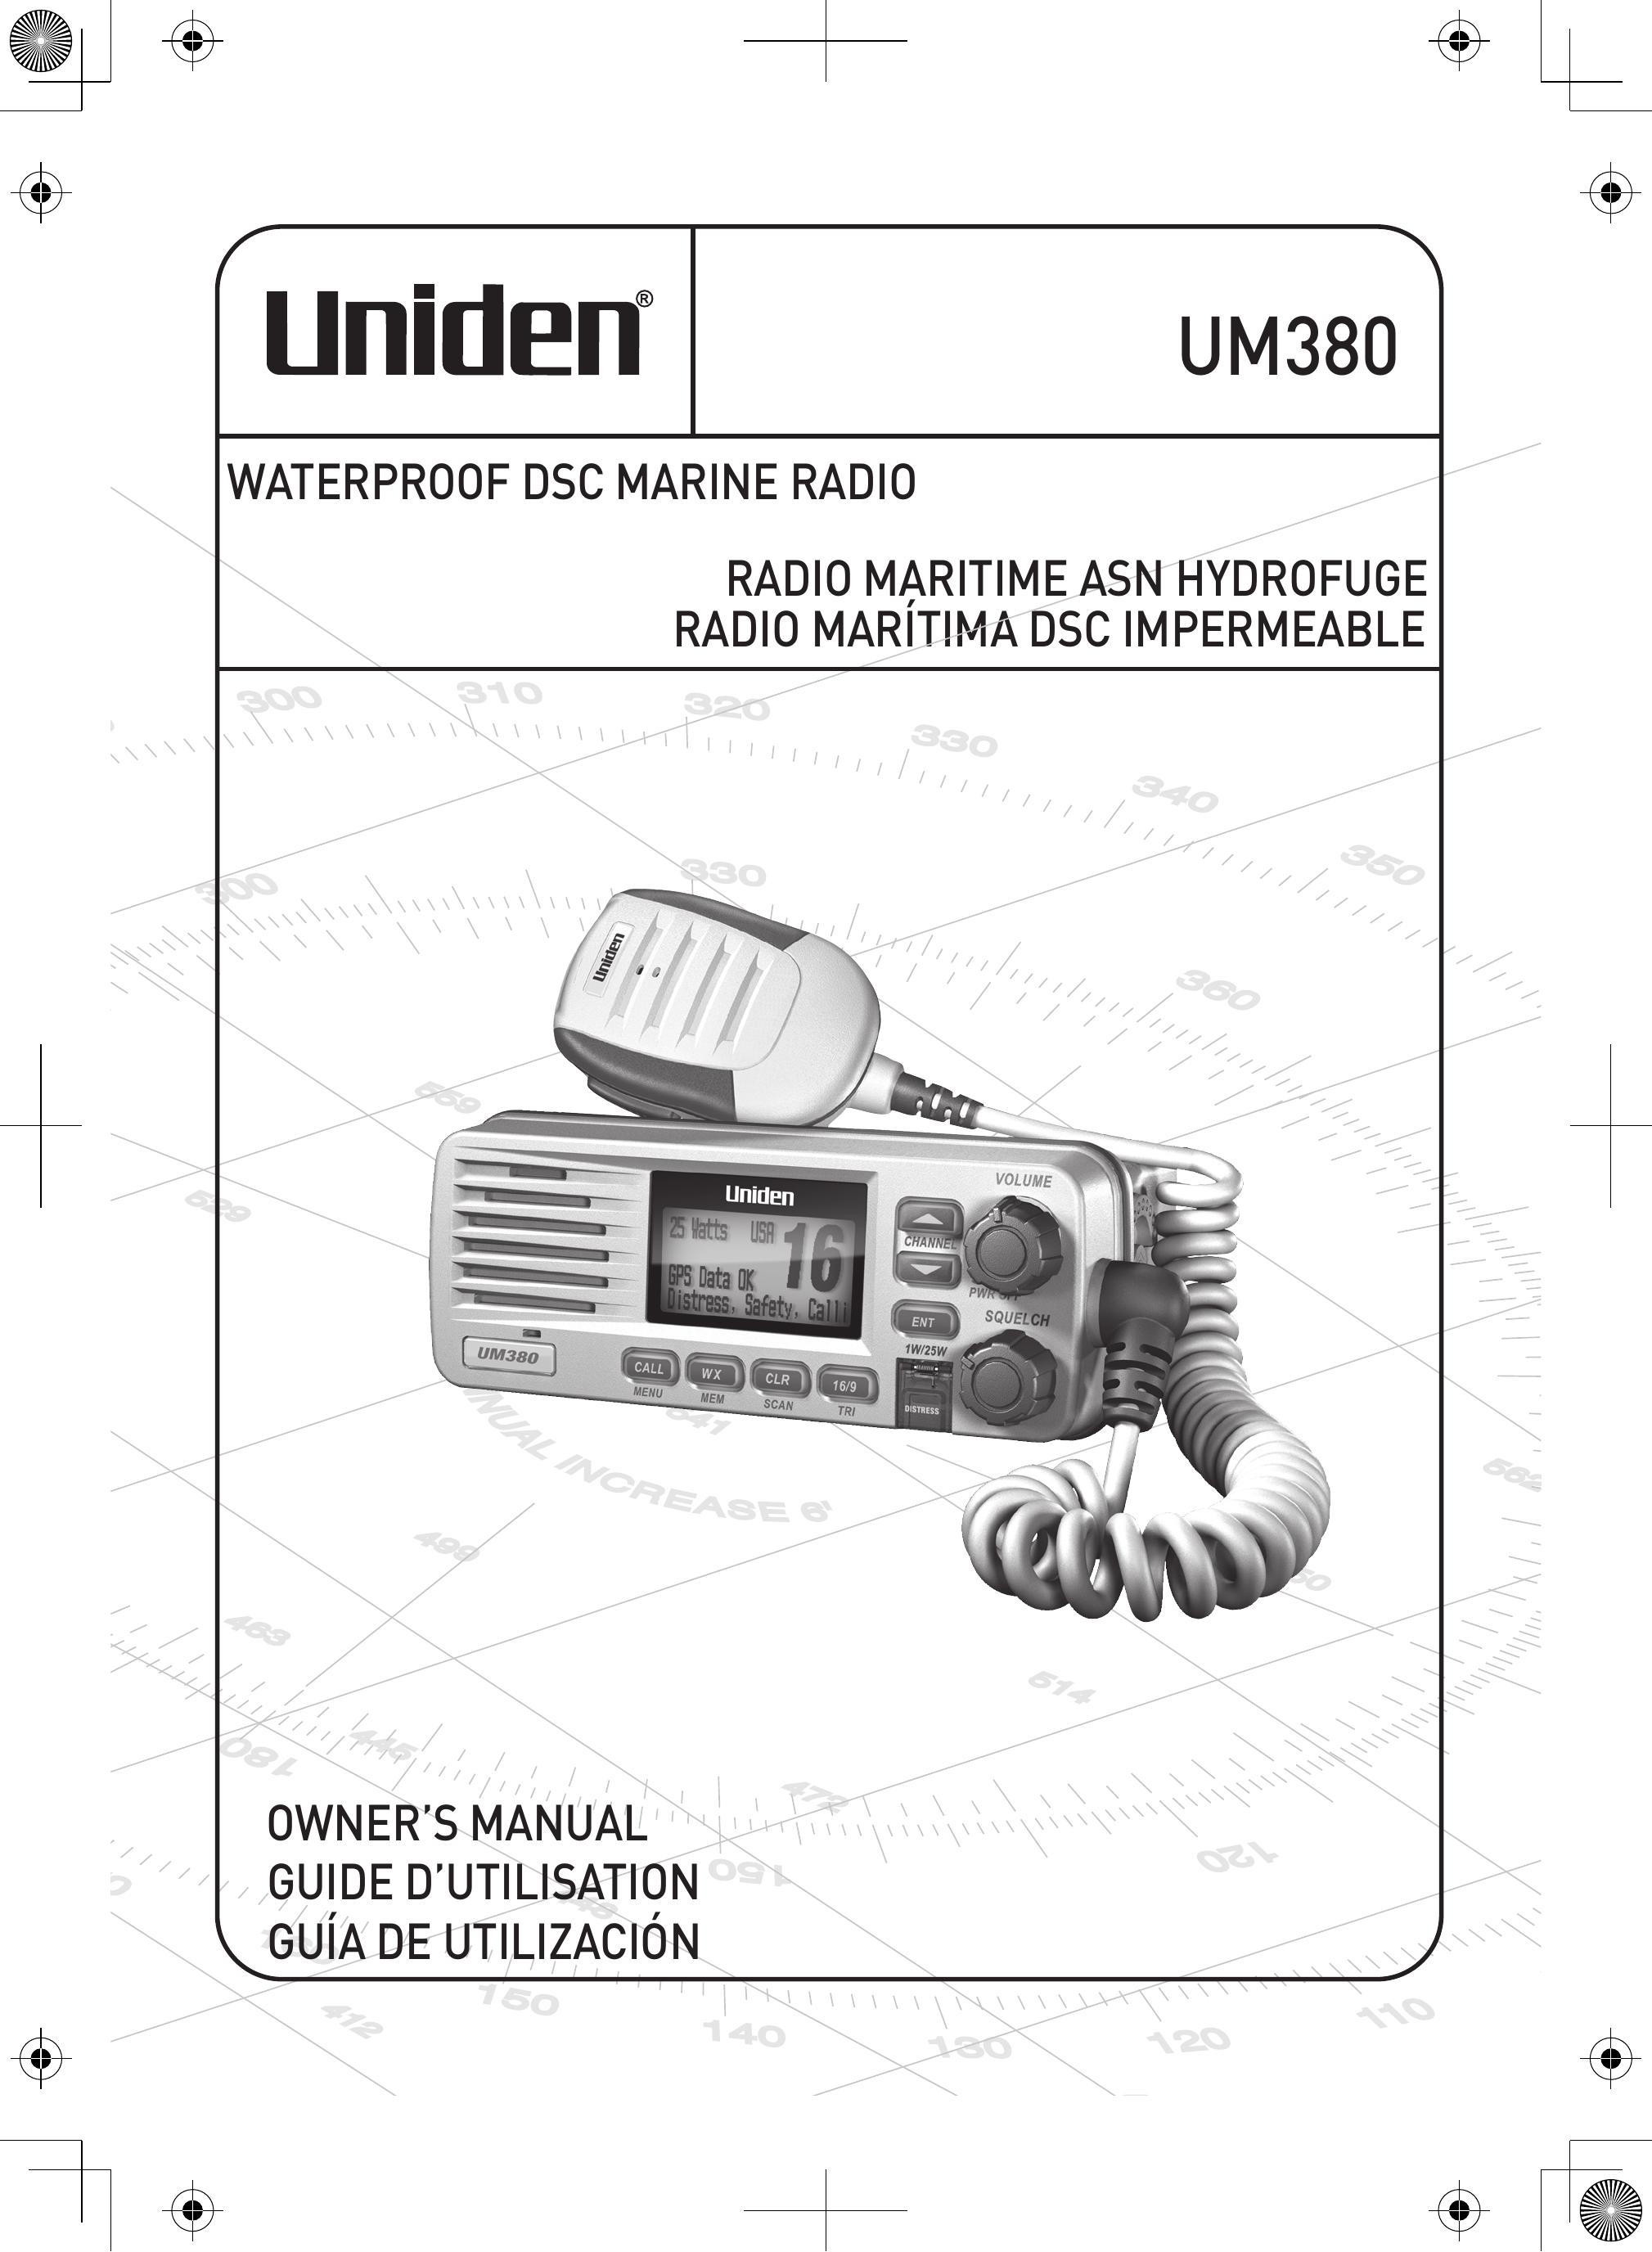 Uniden UM380 Marine Radio User Manual